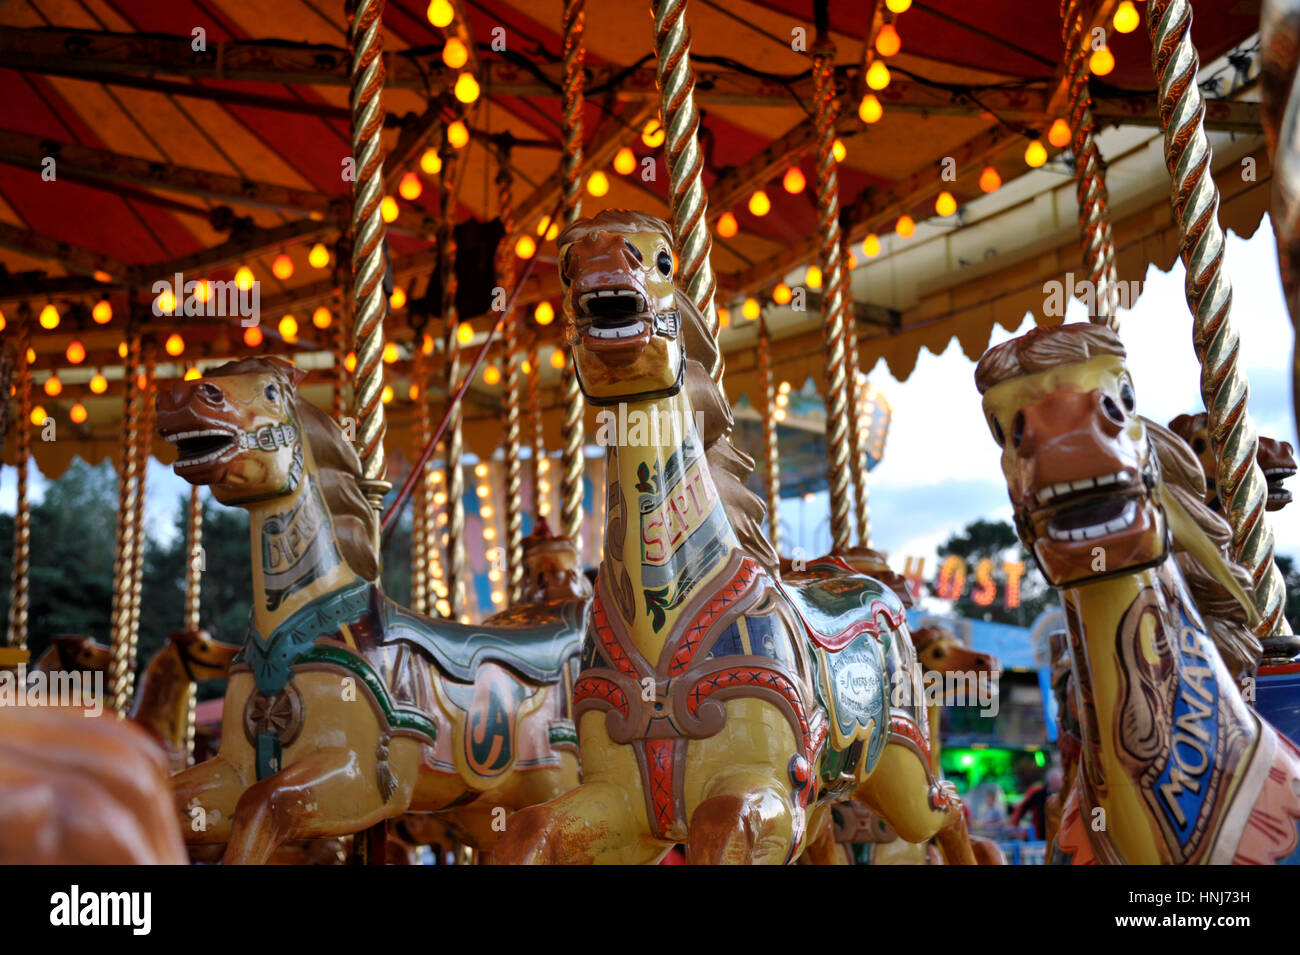 Vintage fiera divertimenti gallopers vapore anche chiamato giostra o Merry Go Round cavallo. Foto Stock